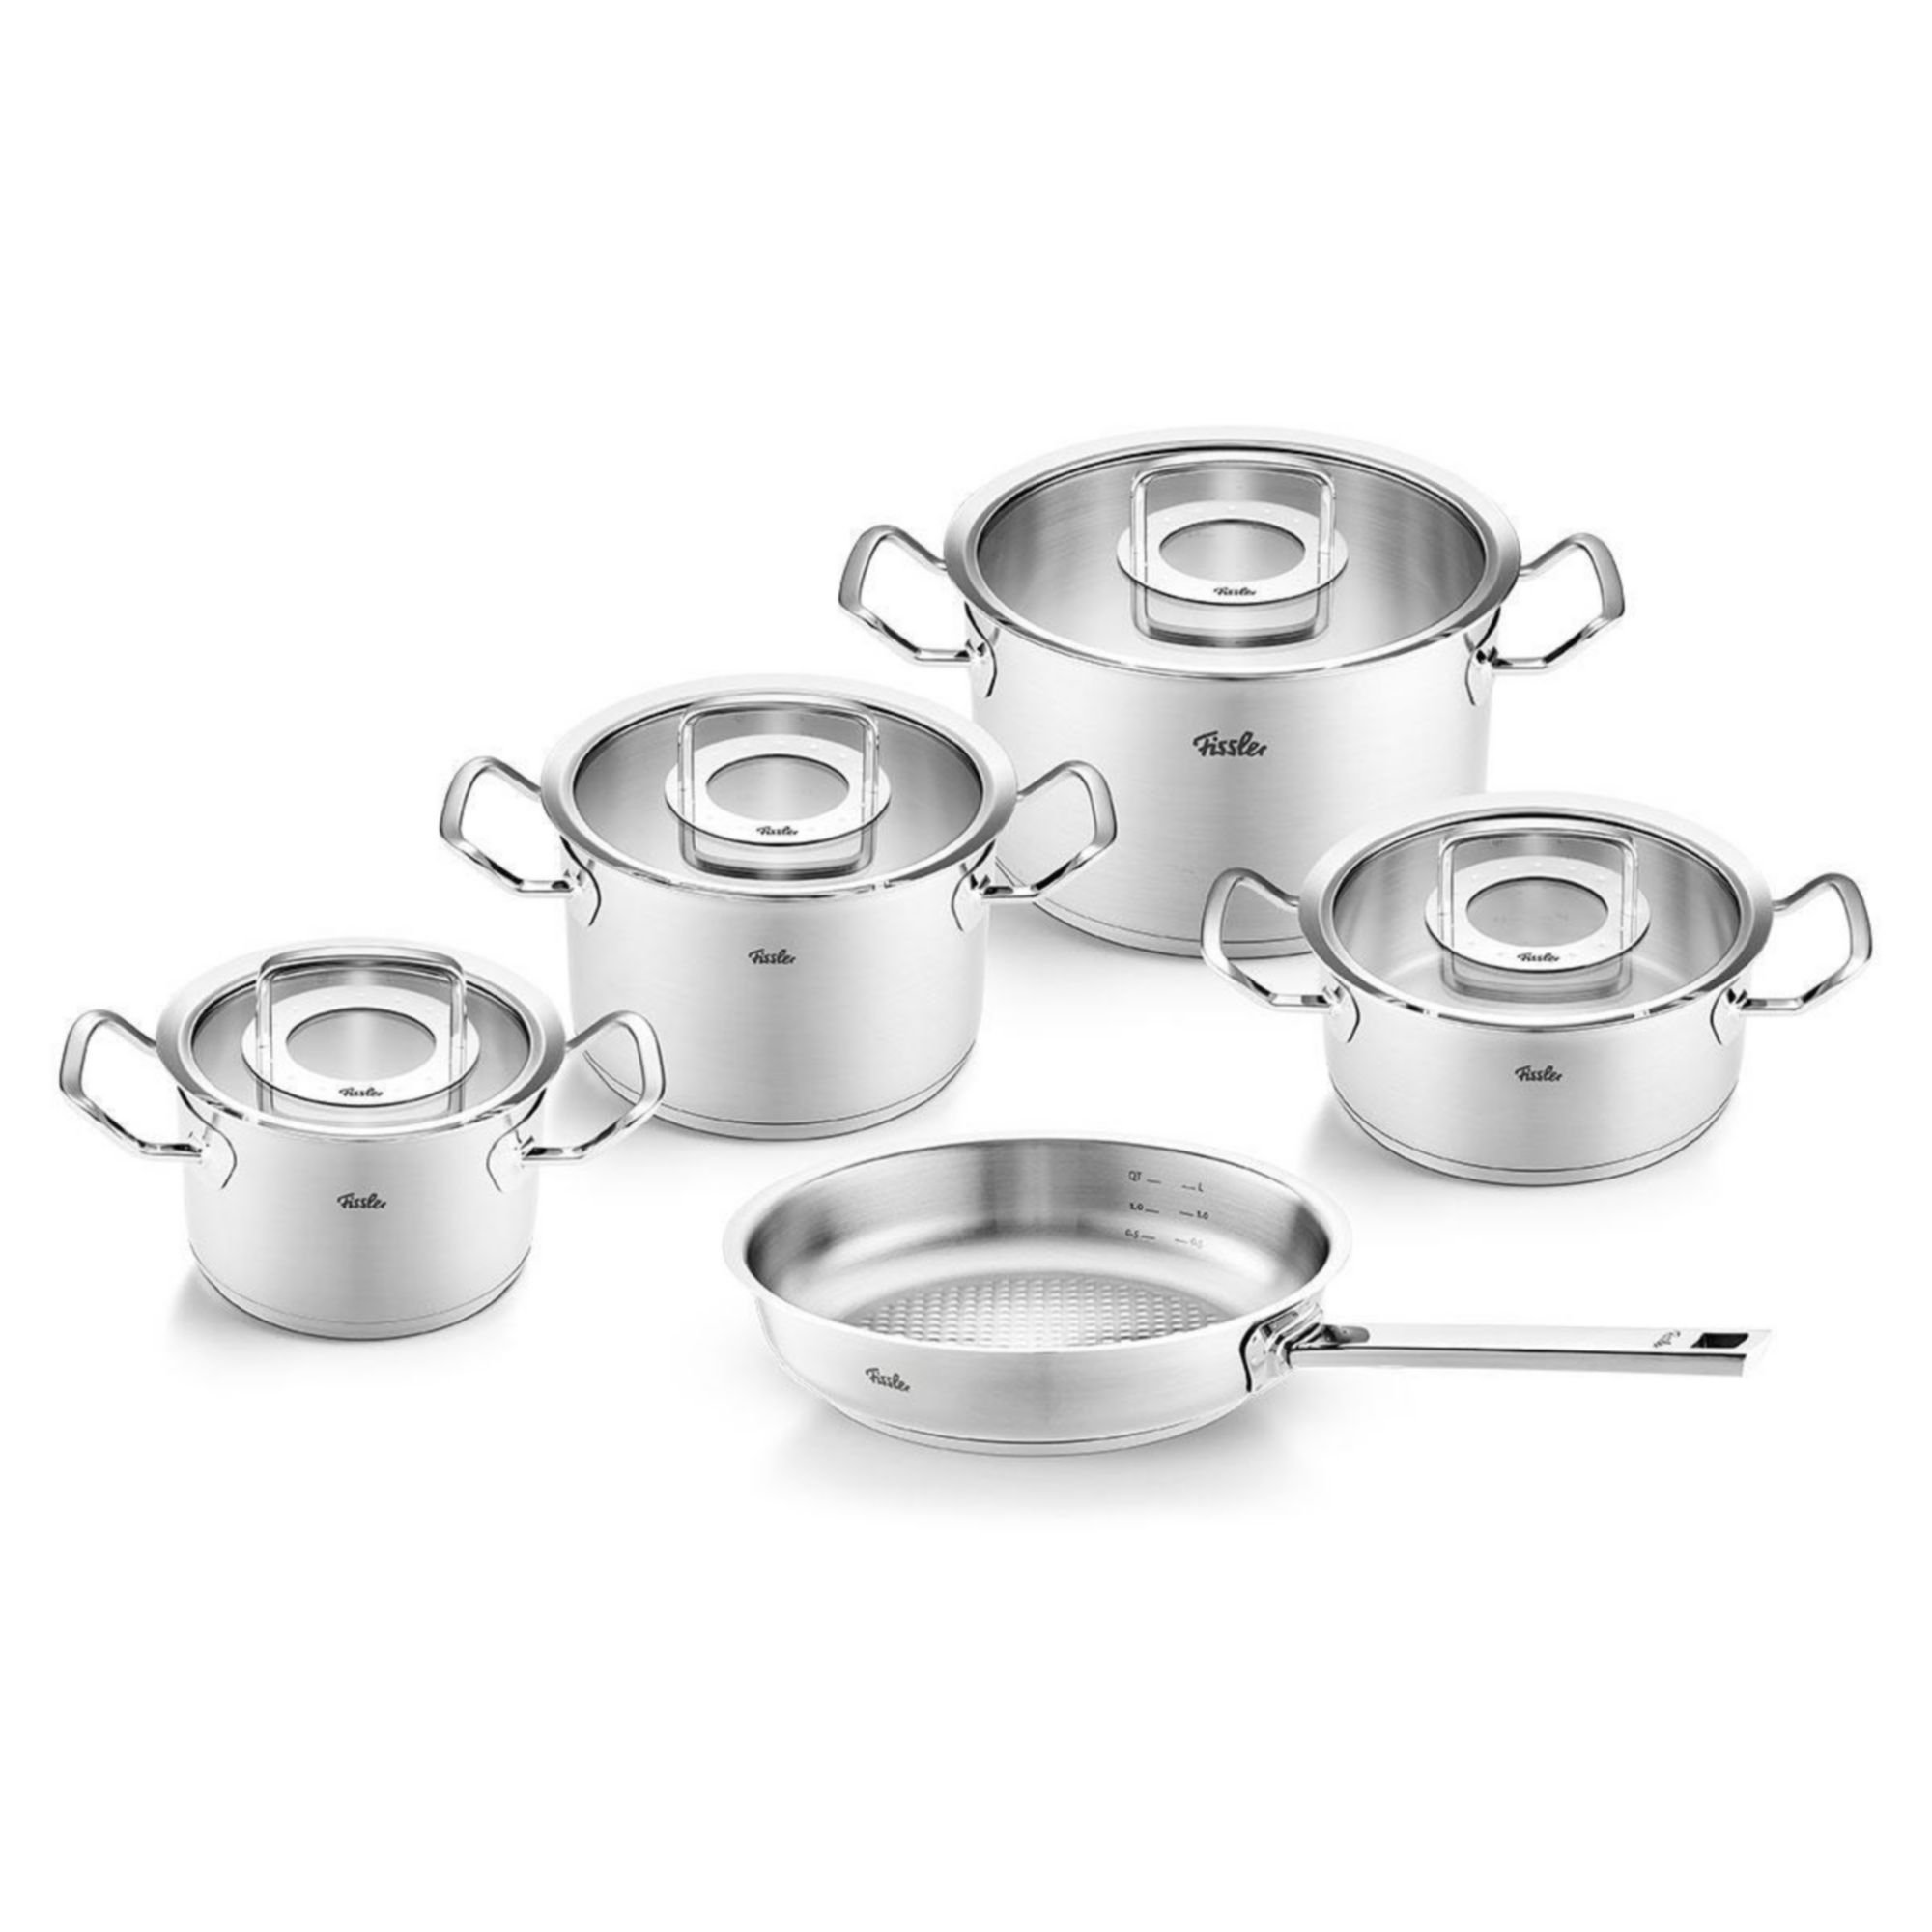 https://assets.wfcdn.com/im/74844908/compr-r85/2261/226153580/original-profi-collection-stainless-steel-cookware-set-with-glass-lids-9-piece.jpg